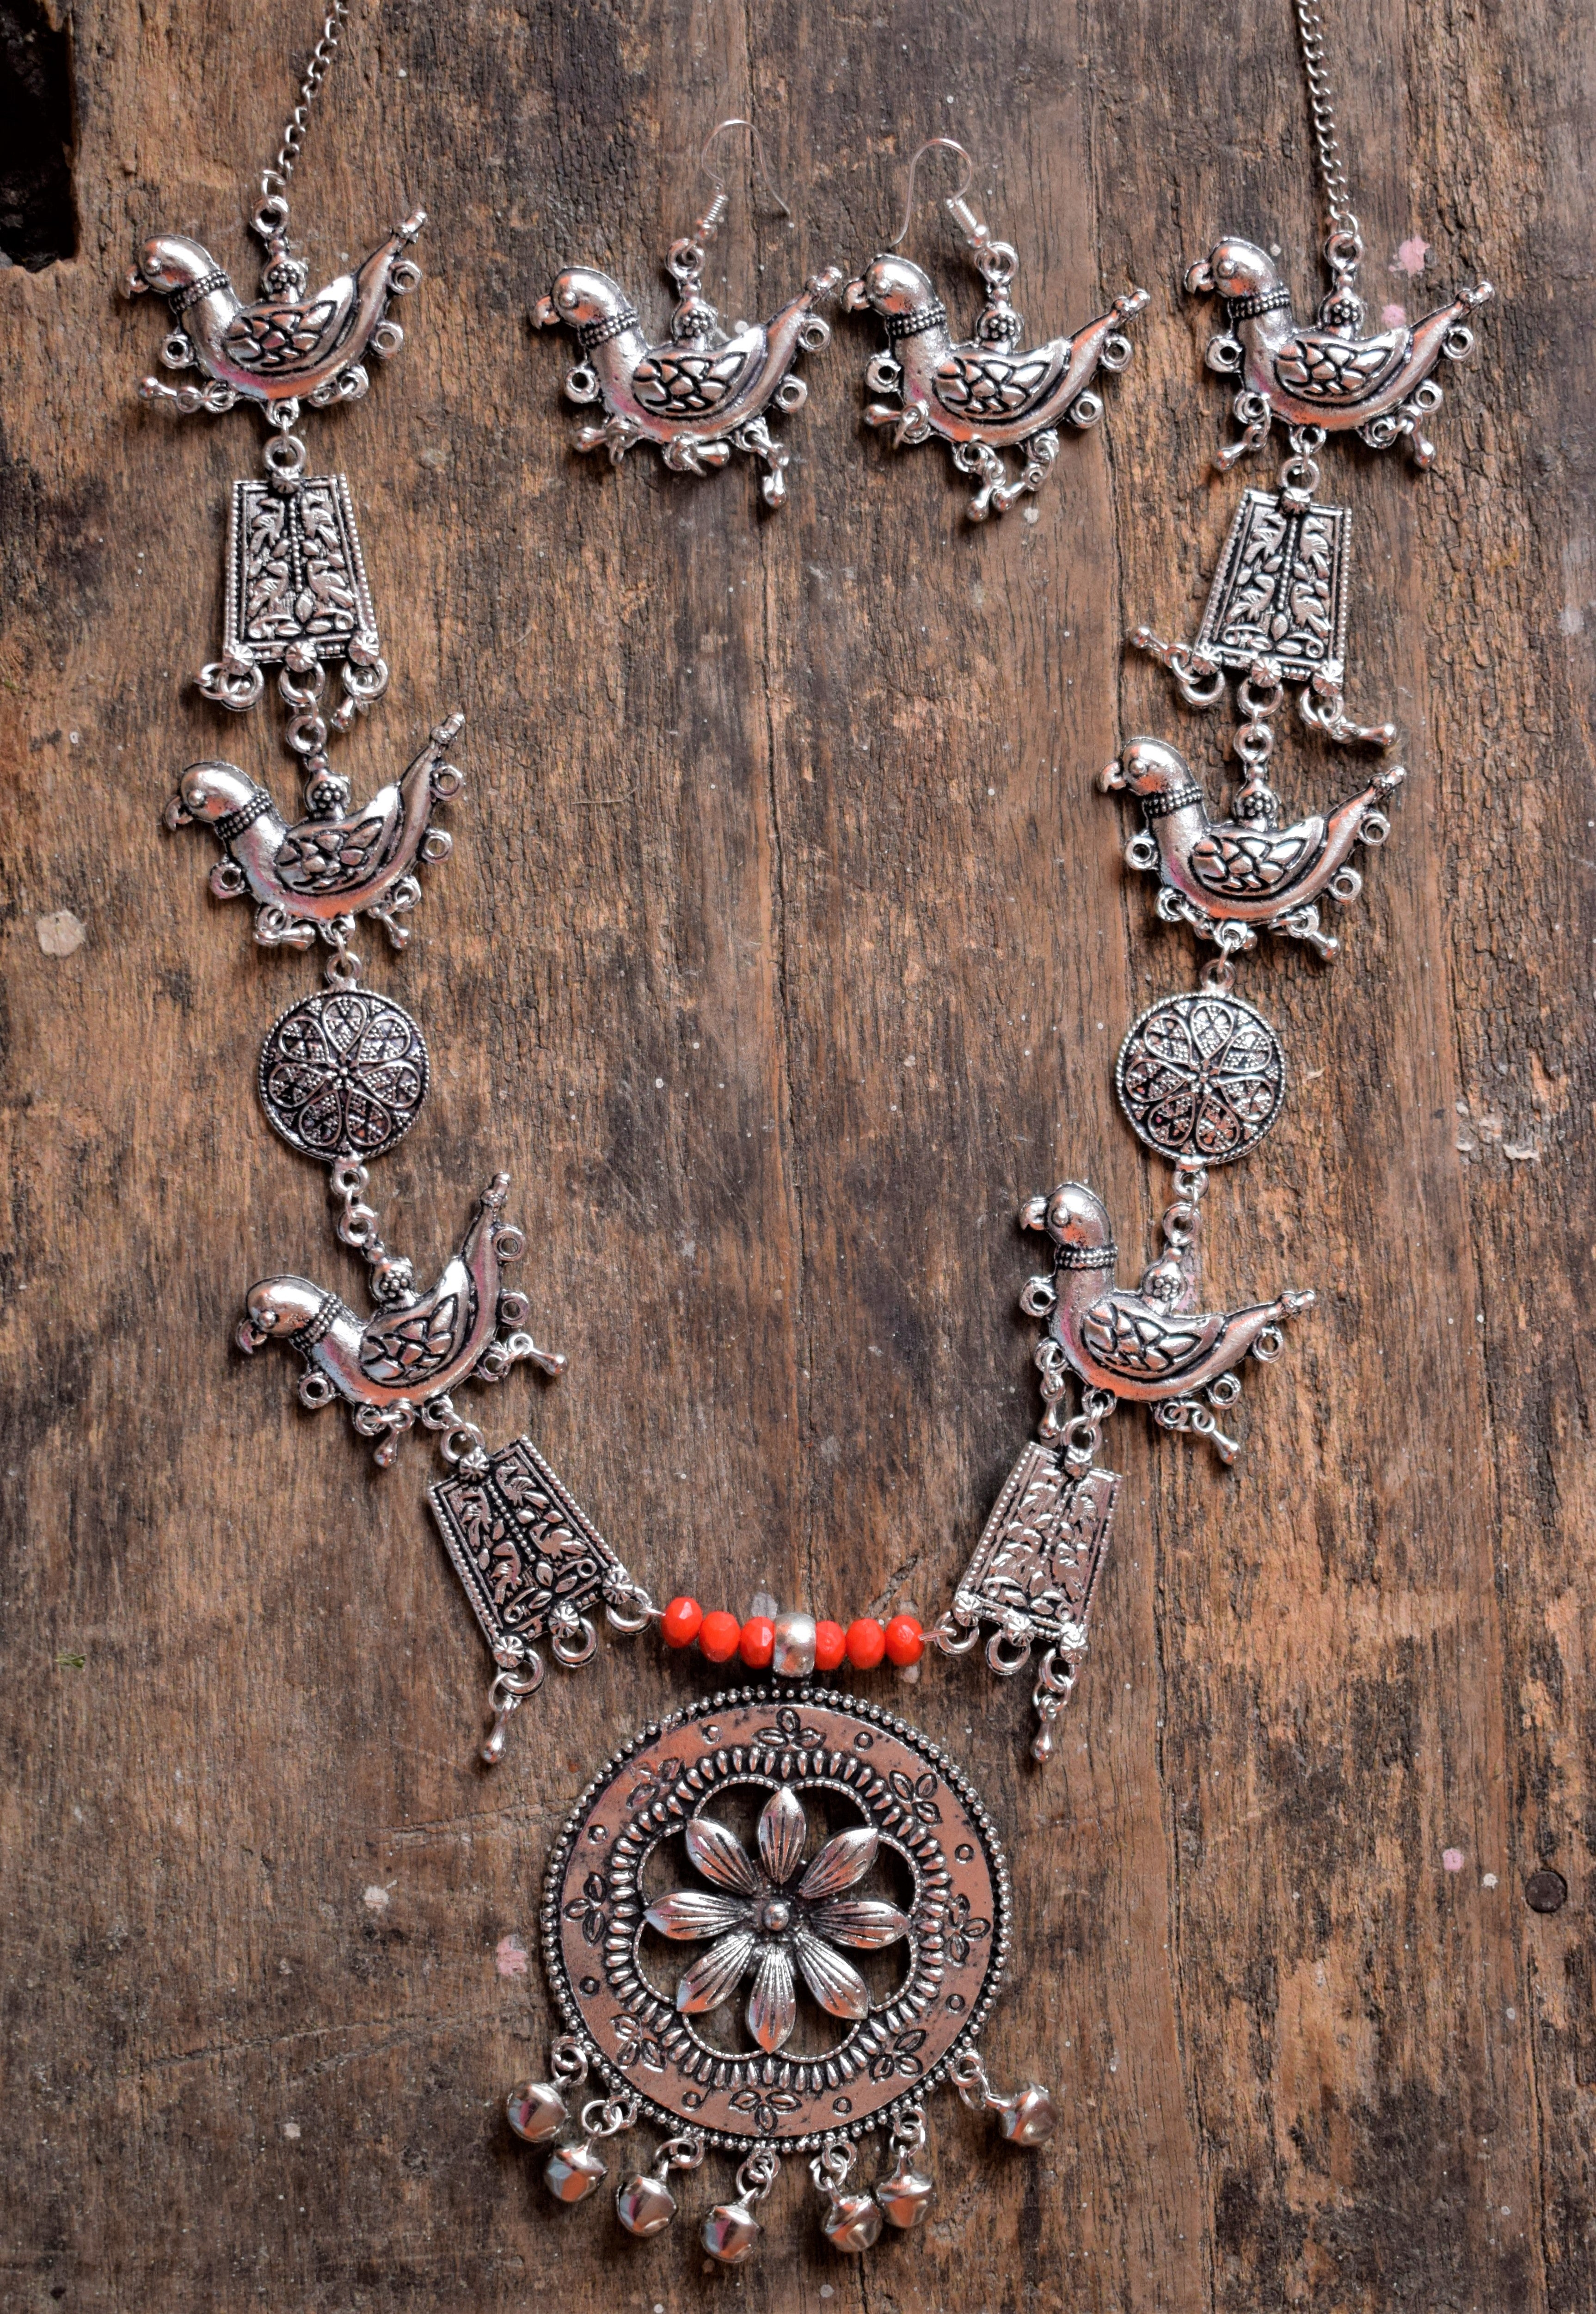 German Silver Handcrafted Necklace – Gunjha.com